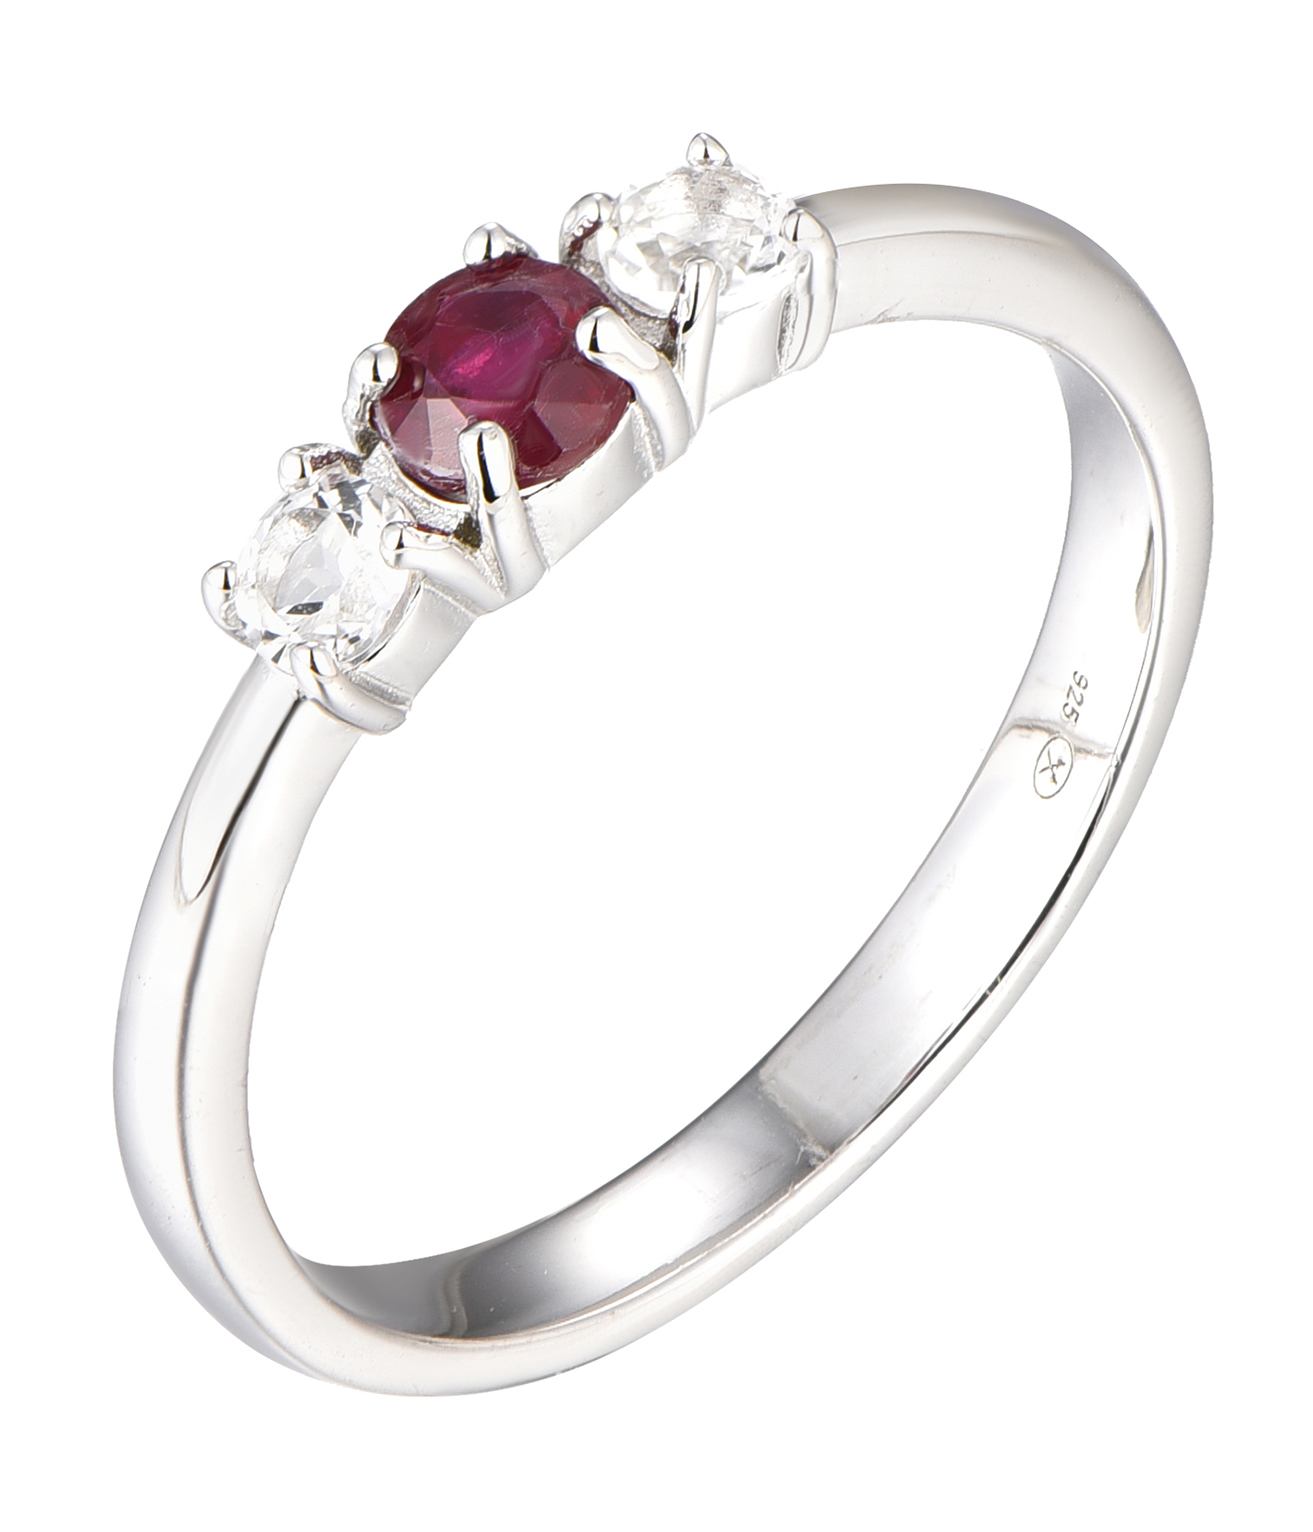 Brilio Silver Blýštivý stříbrný prsten s rubínem Precious Stone SR09003C 60 mm